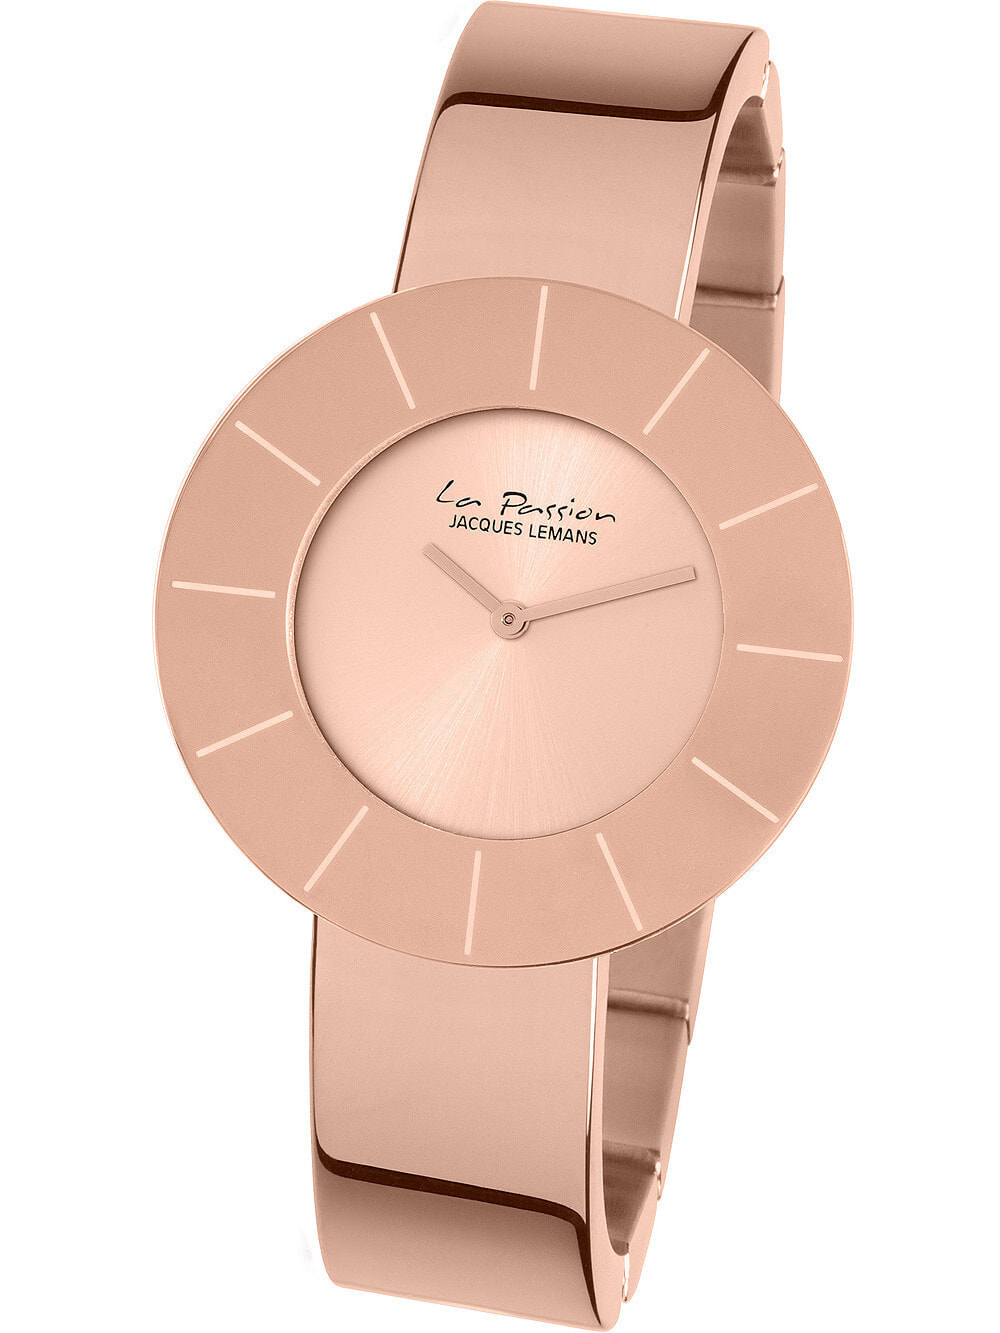 Женские наручные кварцевые часы Jacques Lemans с центральной часовой и минутной стрелками. Круглый корпус выполнен из нержавеющей стали со стойким PVD покрытием розового цвета, на браслете.